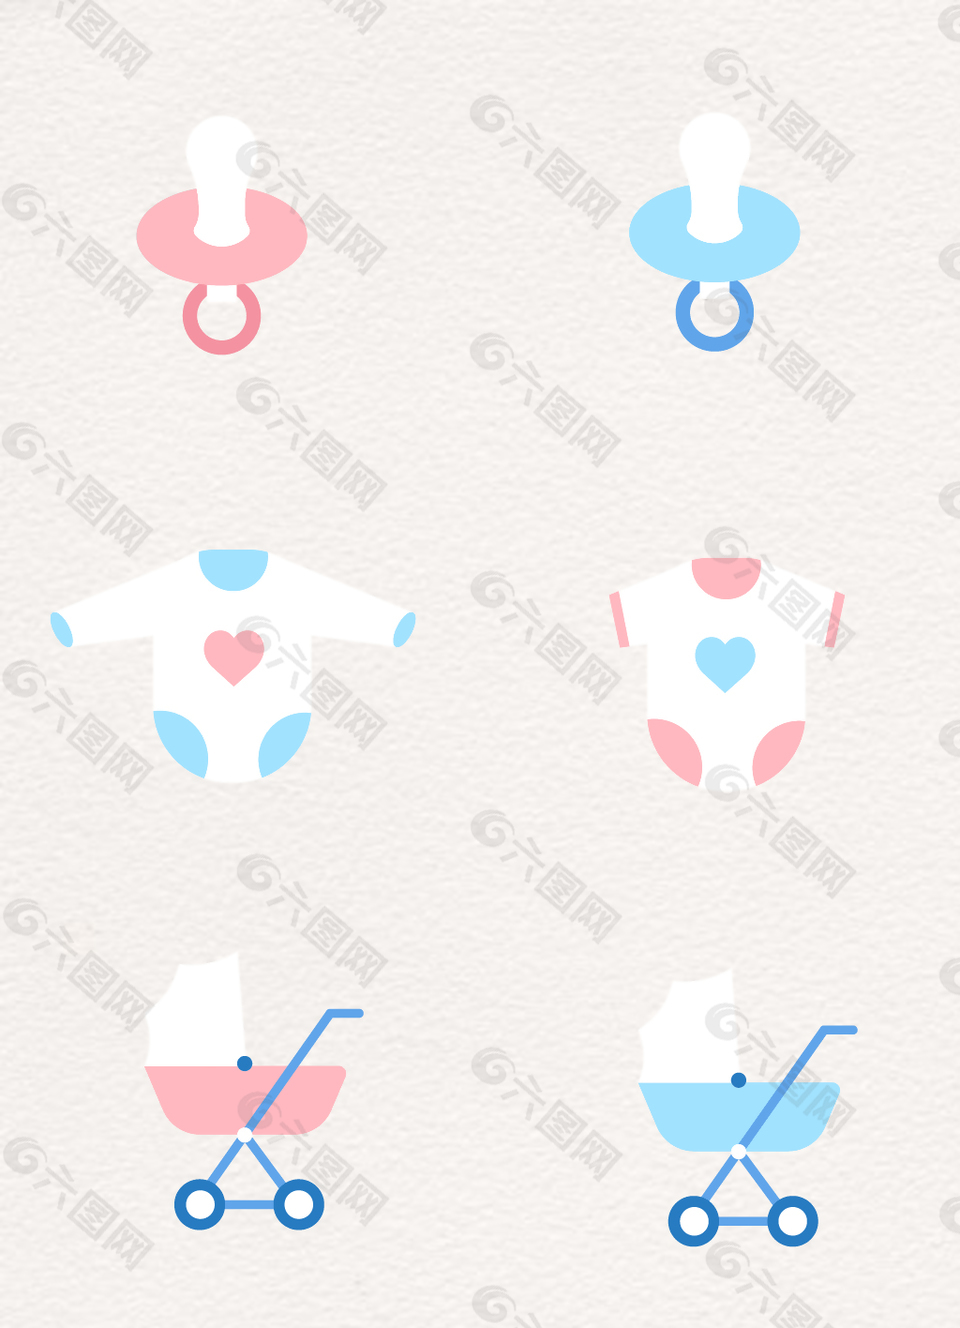 粉蓝色小清新可爱母婴用品矢量素材